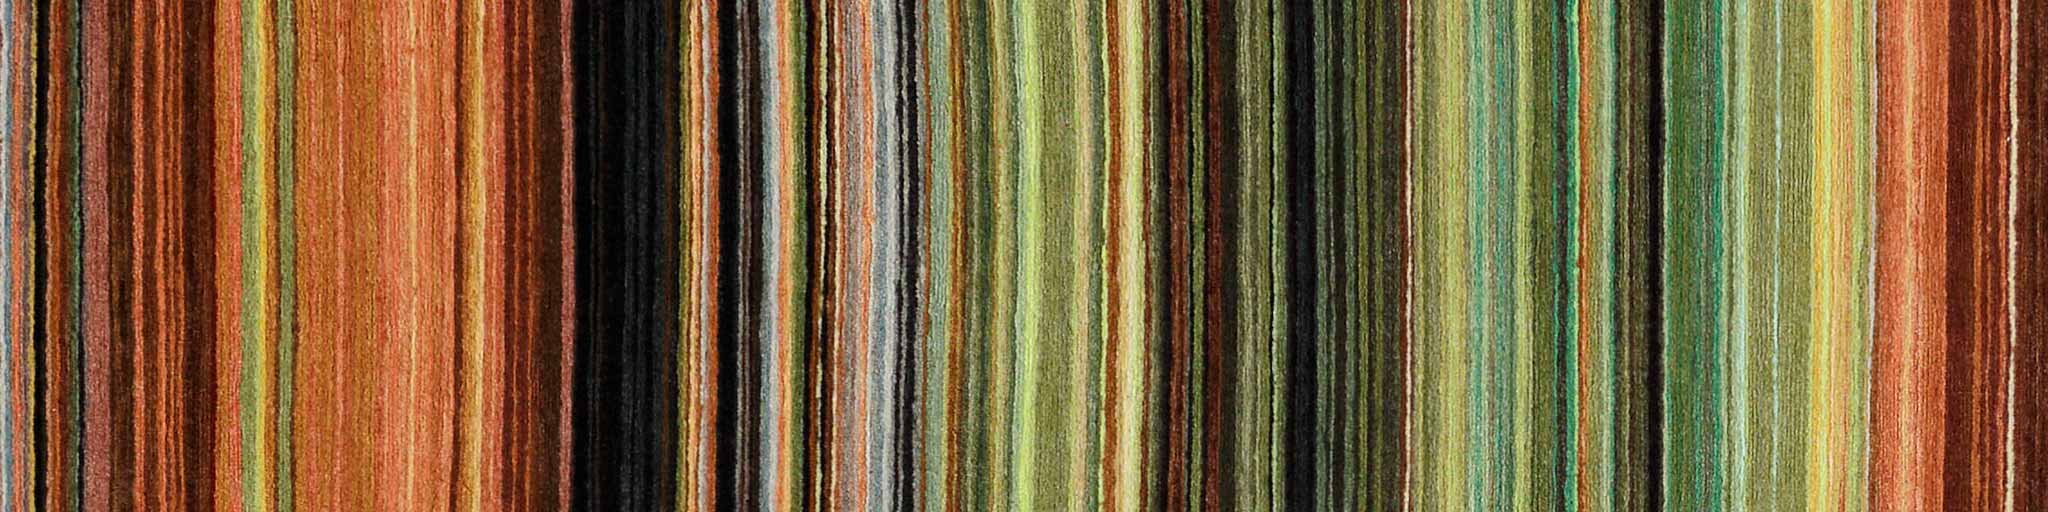 Different Stripes | Reuber Henning